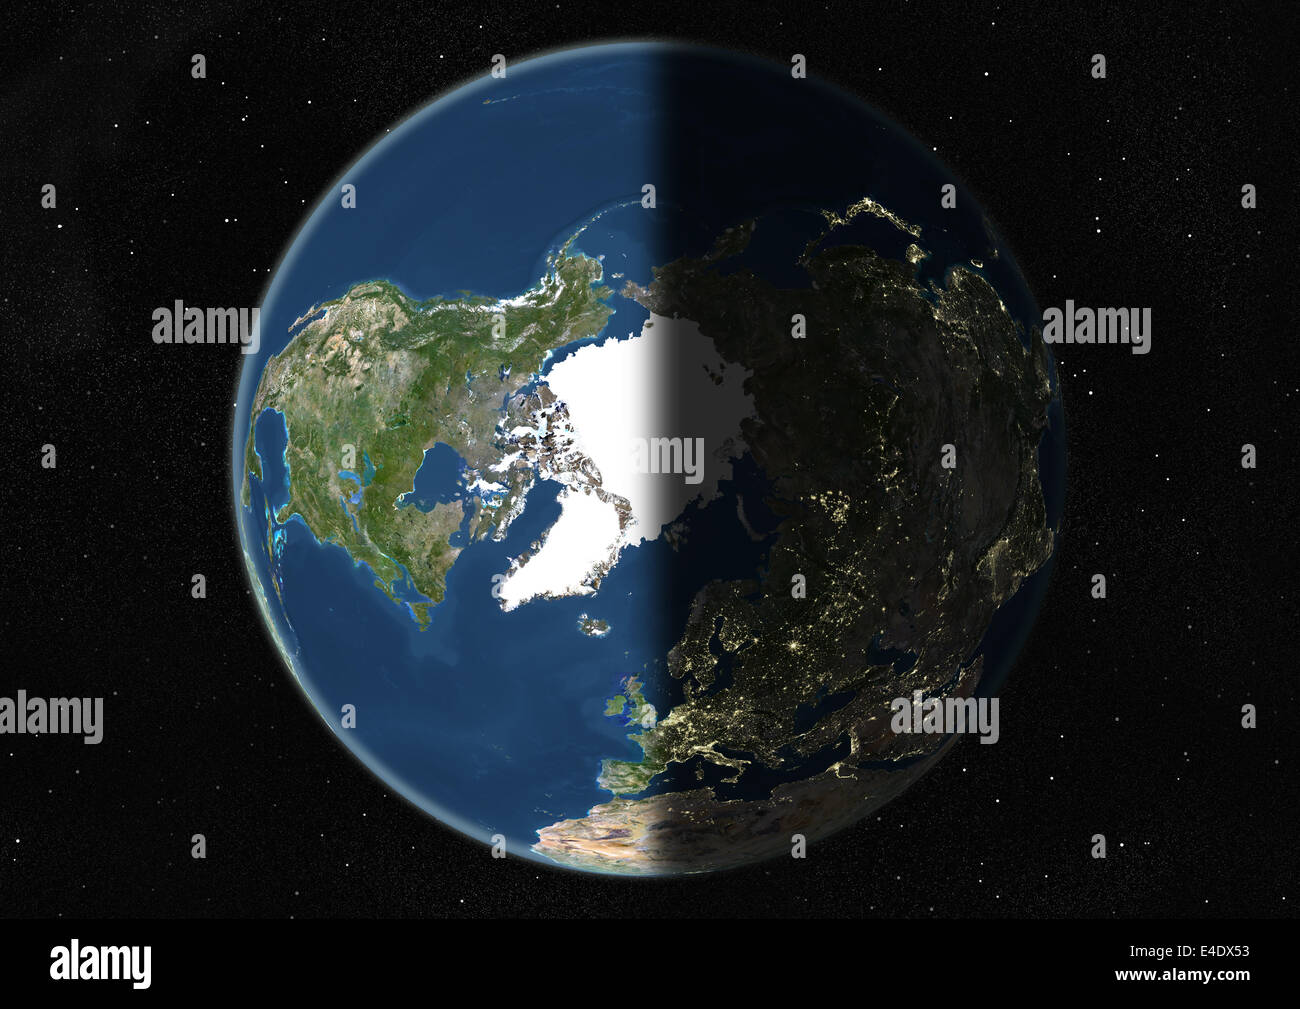 Mondo centrato sul polo nord, True Color immagine satellitare. True color  Immagine satellitare della terra centrata sul polo nord Foto stock - Alamy